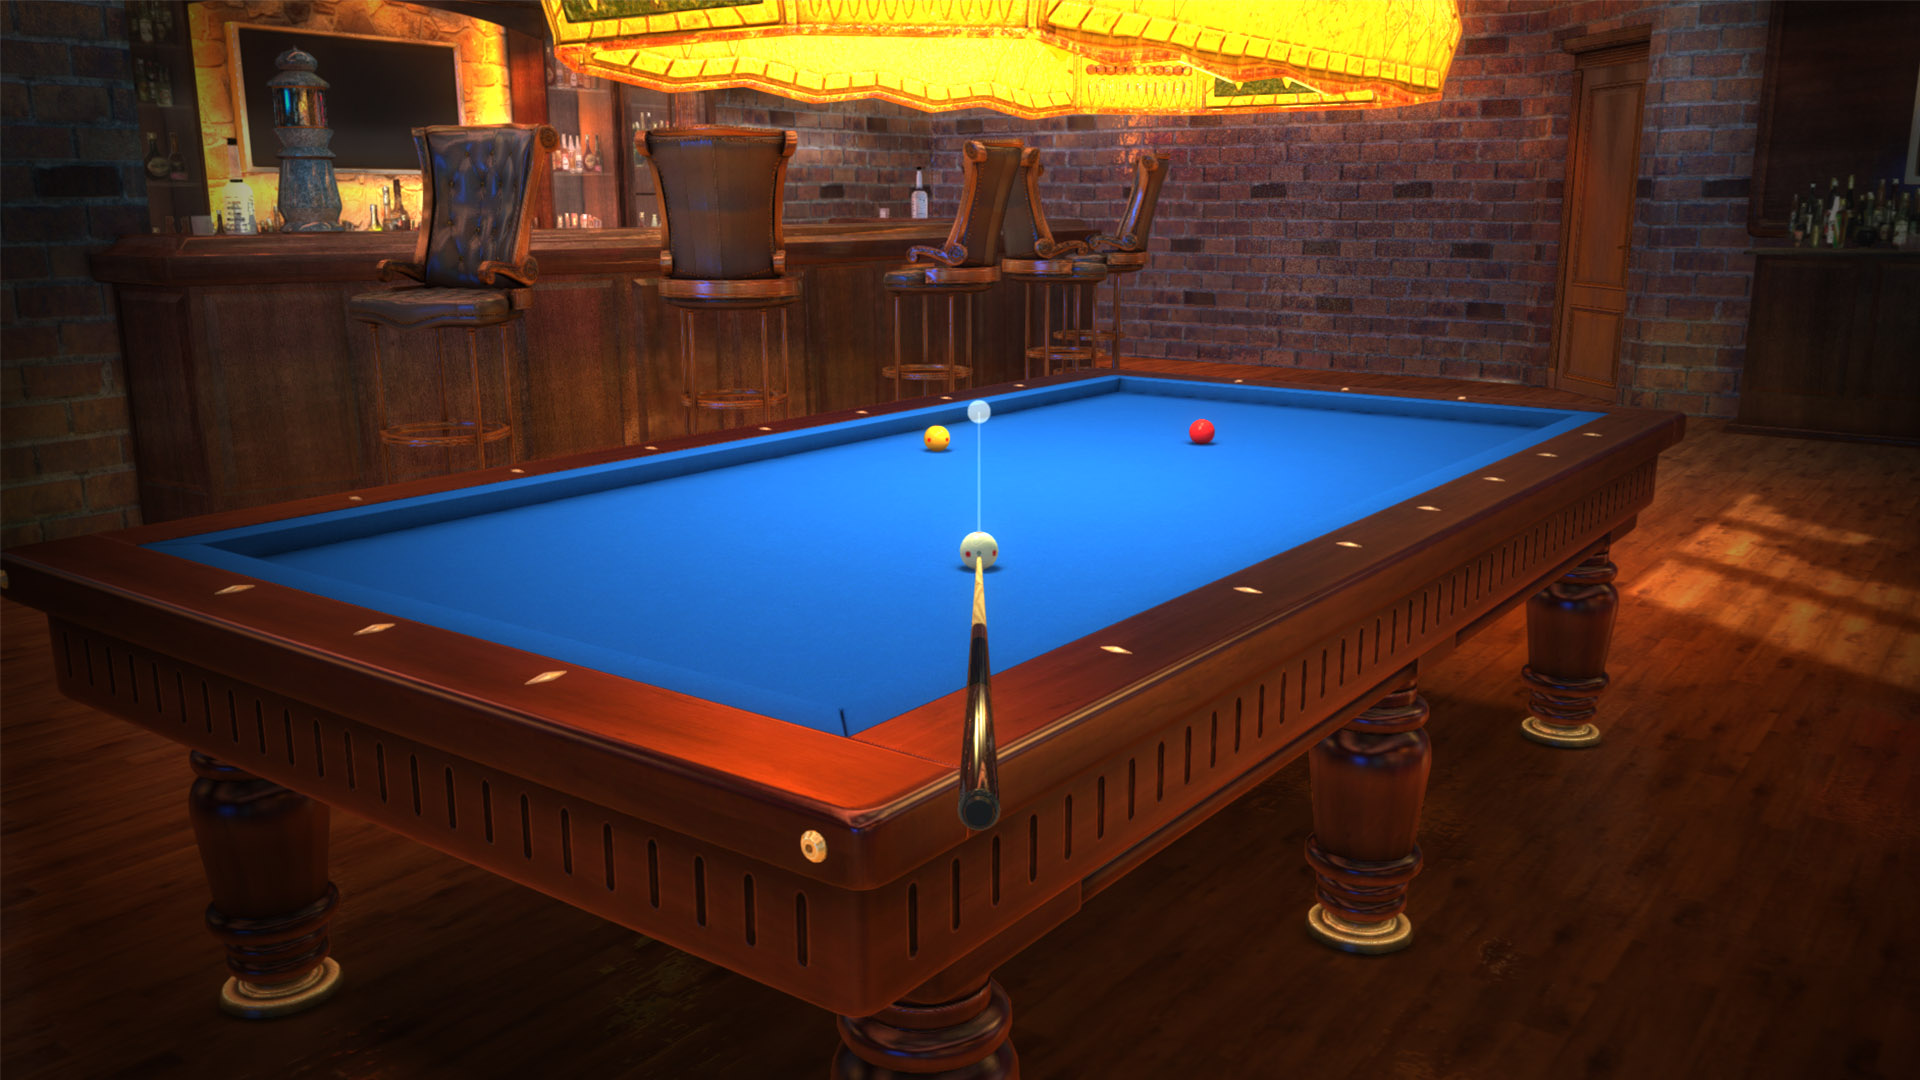 Pool Elite - Best Free 3D Billiards Game